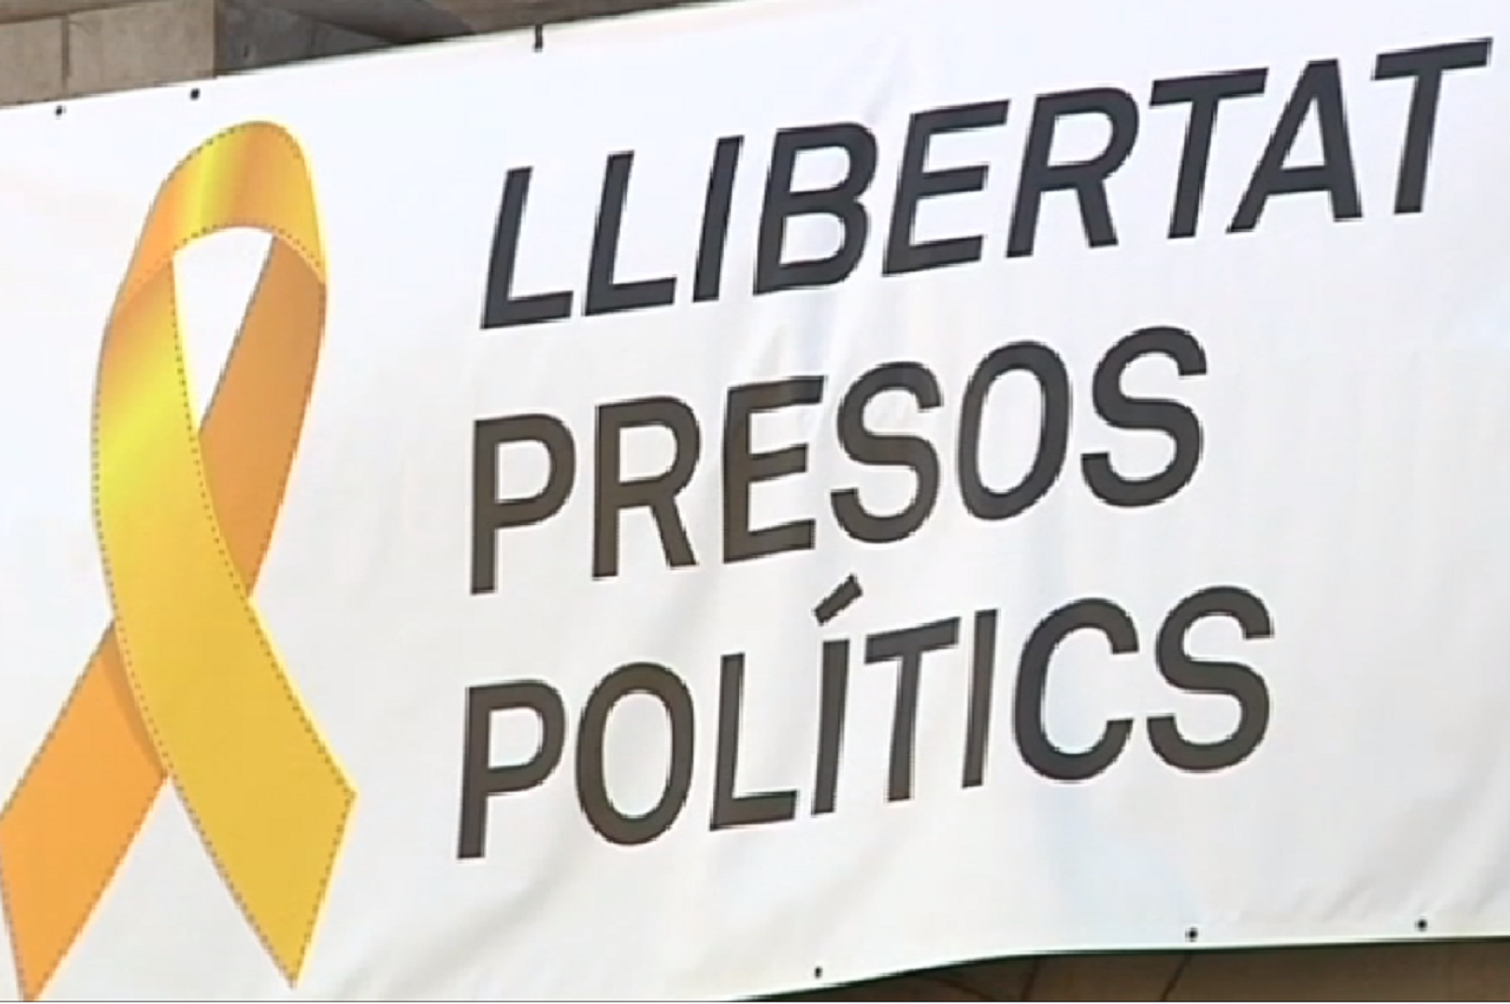 La Junta Electoral ordena a Colau retirar la pancarta de "Libertad presos políticos"